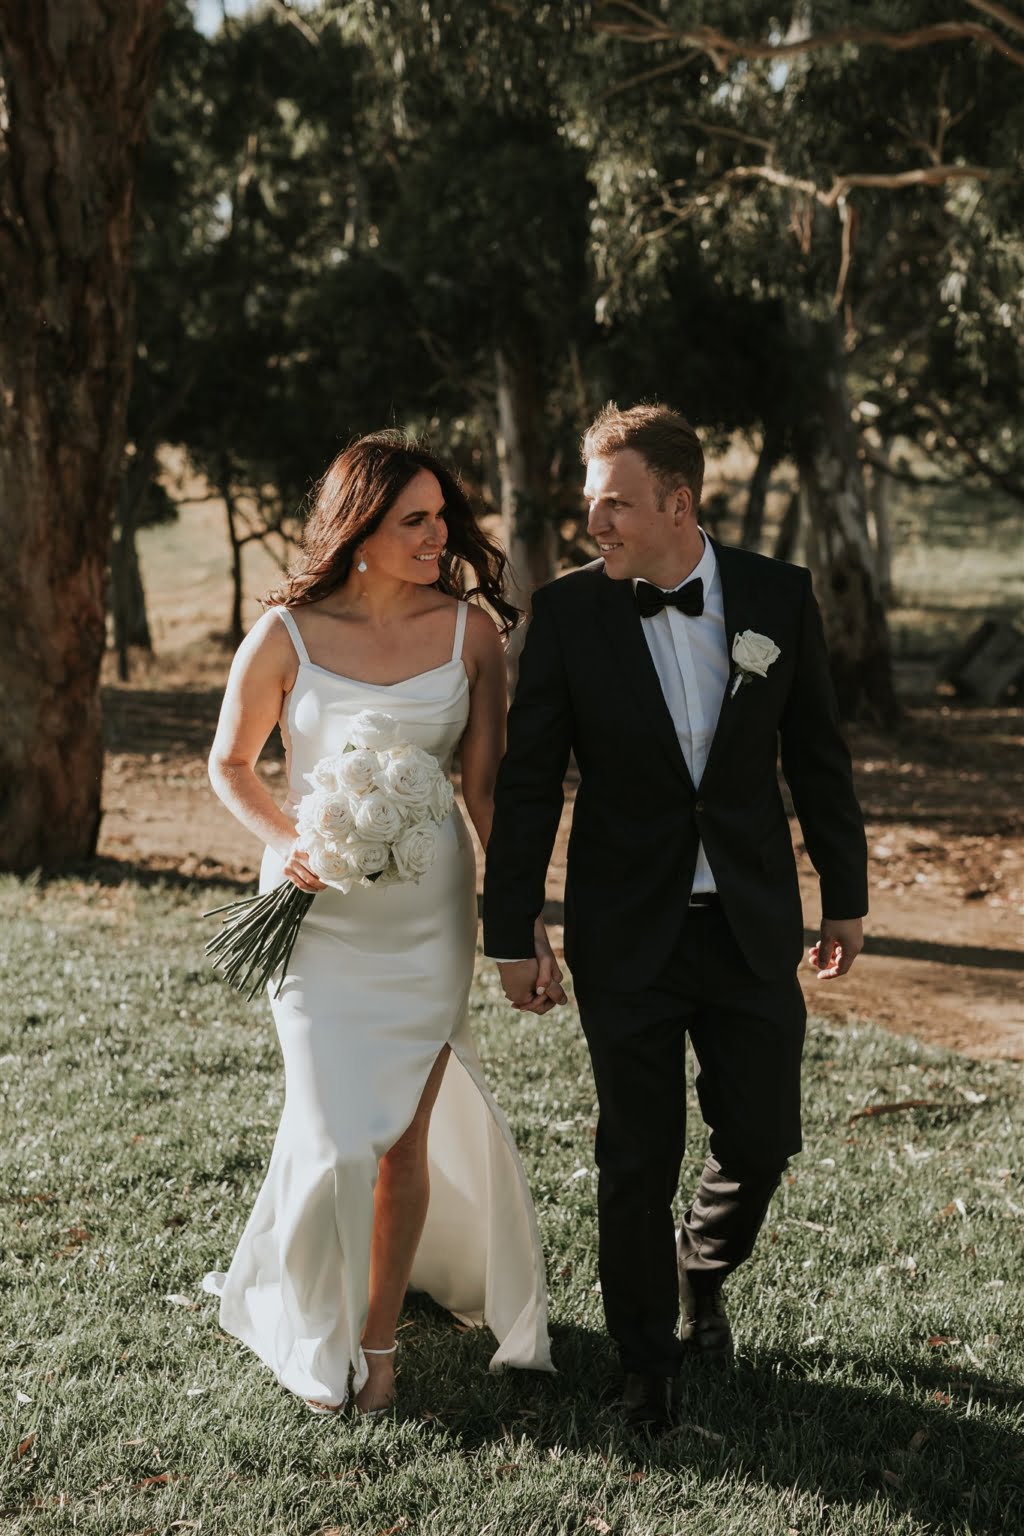 KATE & JACK’S ADELAIDE HILLS WEDDING – Hello May